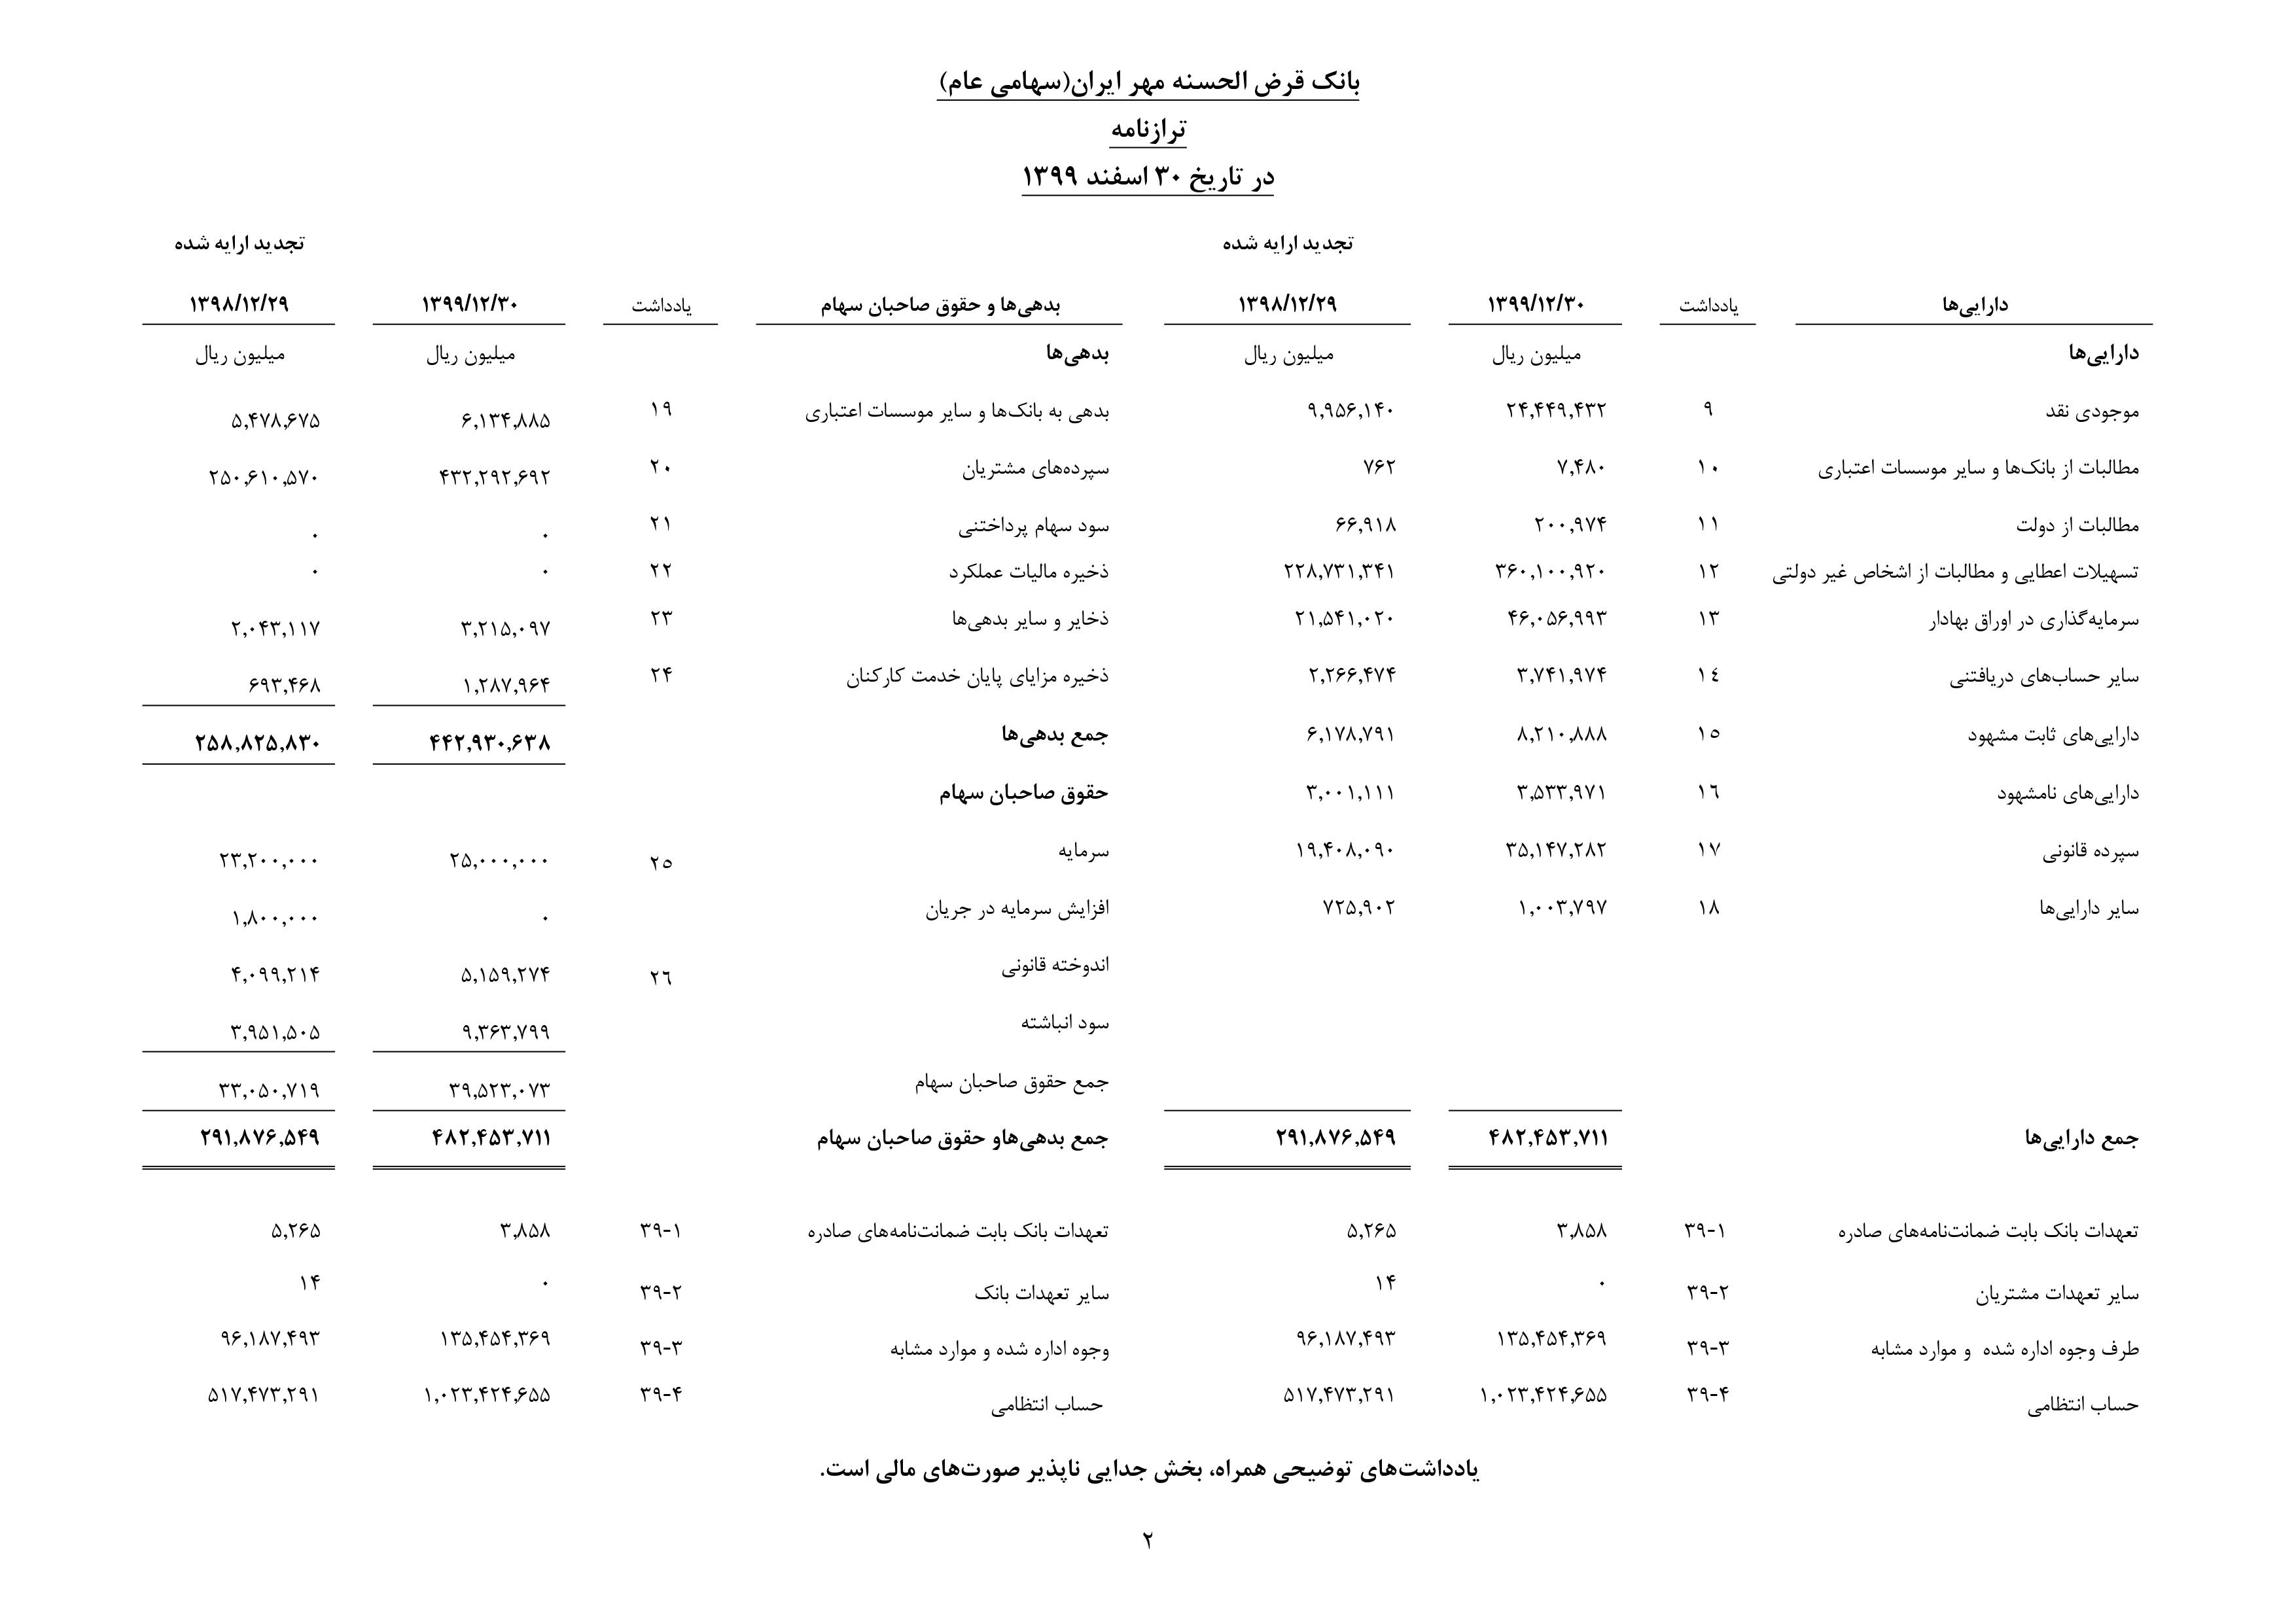 سود انباشته بانک مهر ایران به مرز 10هزار میلیارد ریال رسید